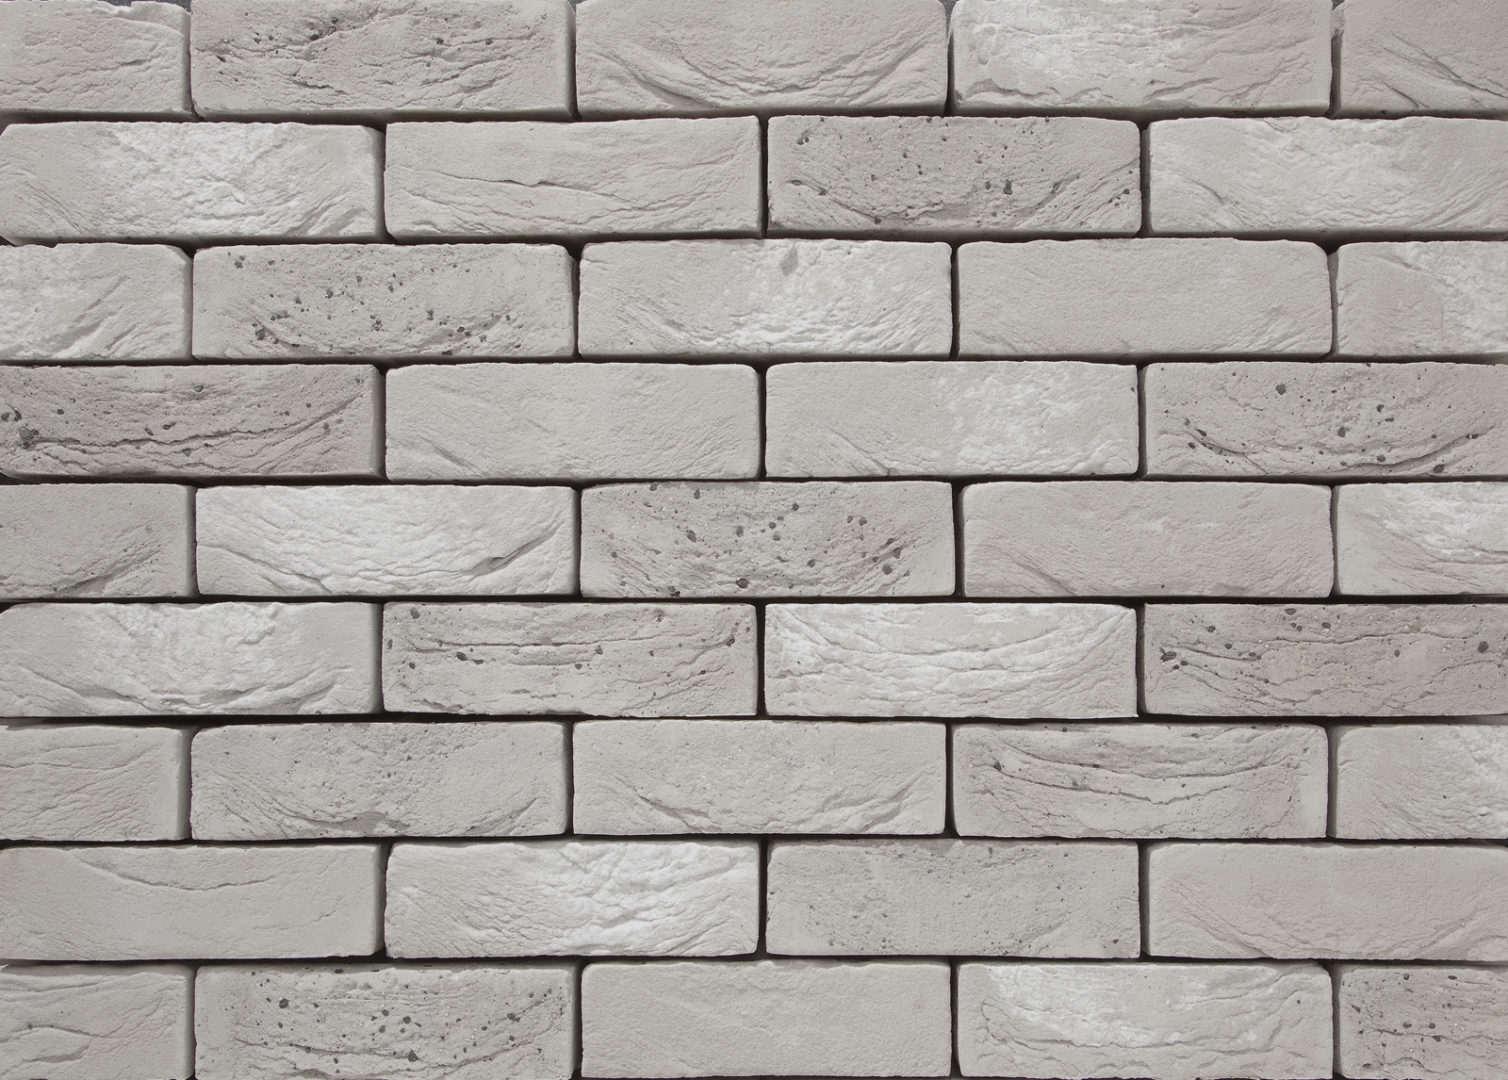 Regal Blend Brick Slips – 1/2 Square Metre – 30 TilesBox Size – 1/2 Square Metre – 30 Tiles – Reclaimed Brick Tiles